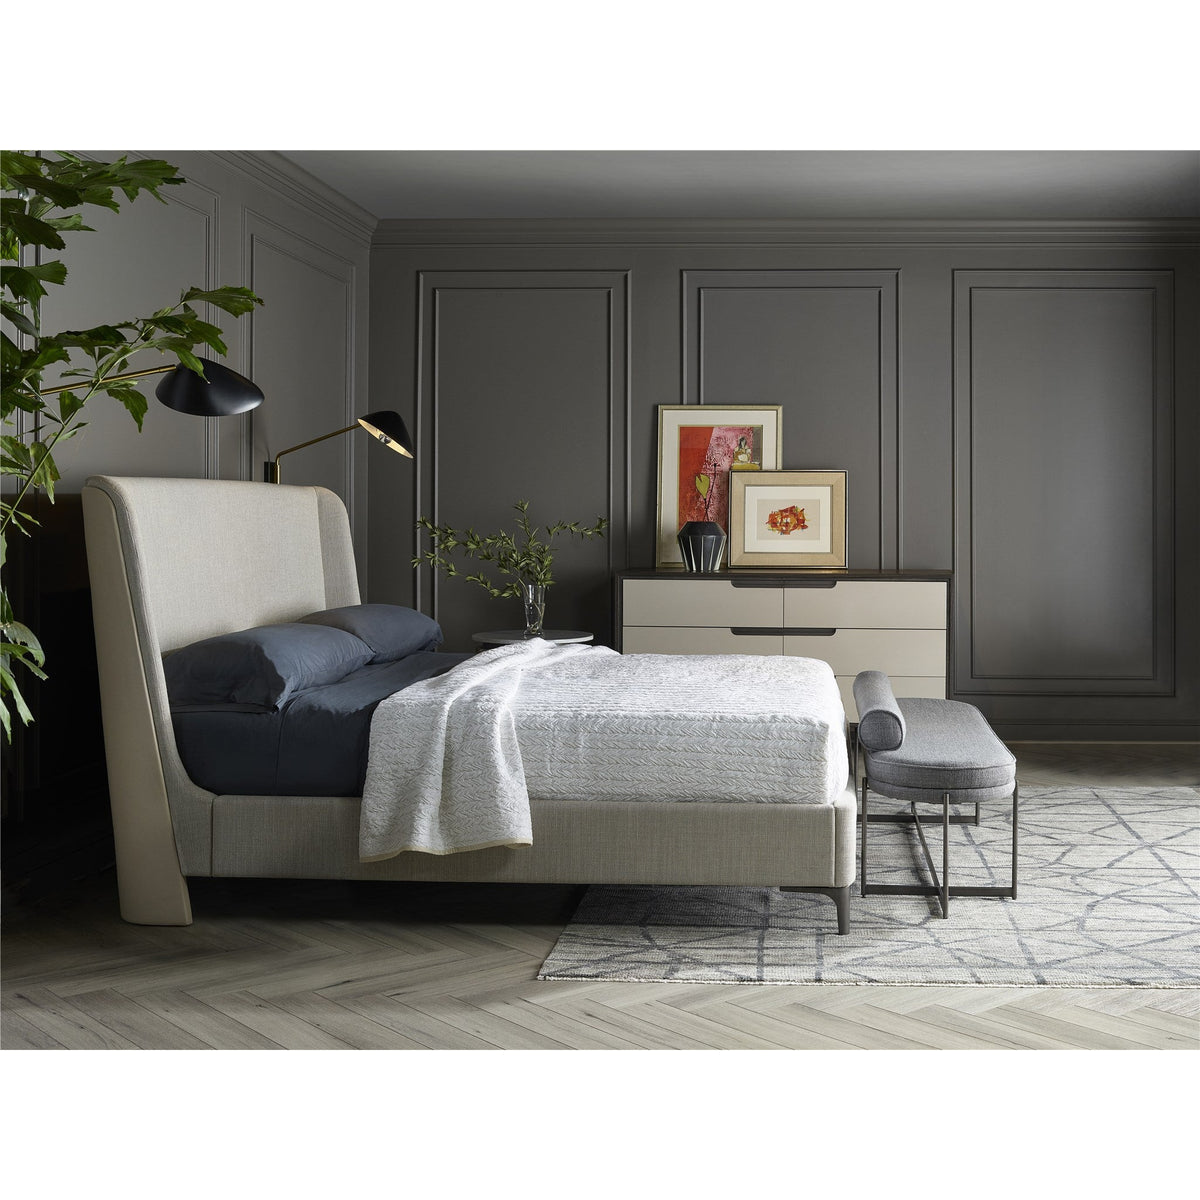 Jasper Bed - Be Bold Furniture